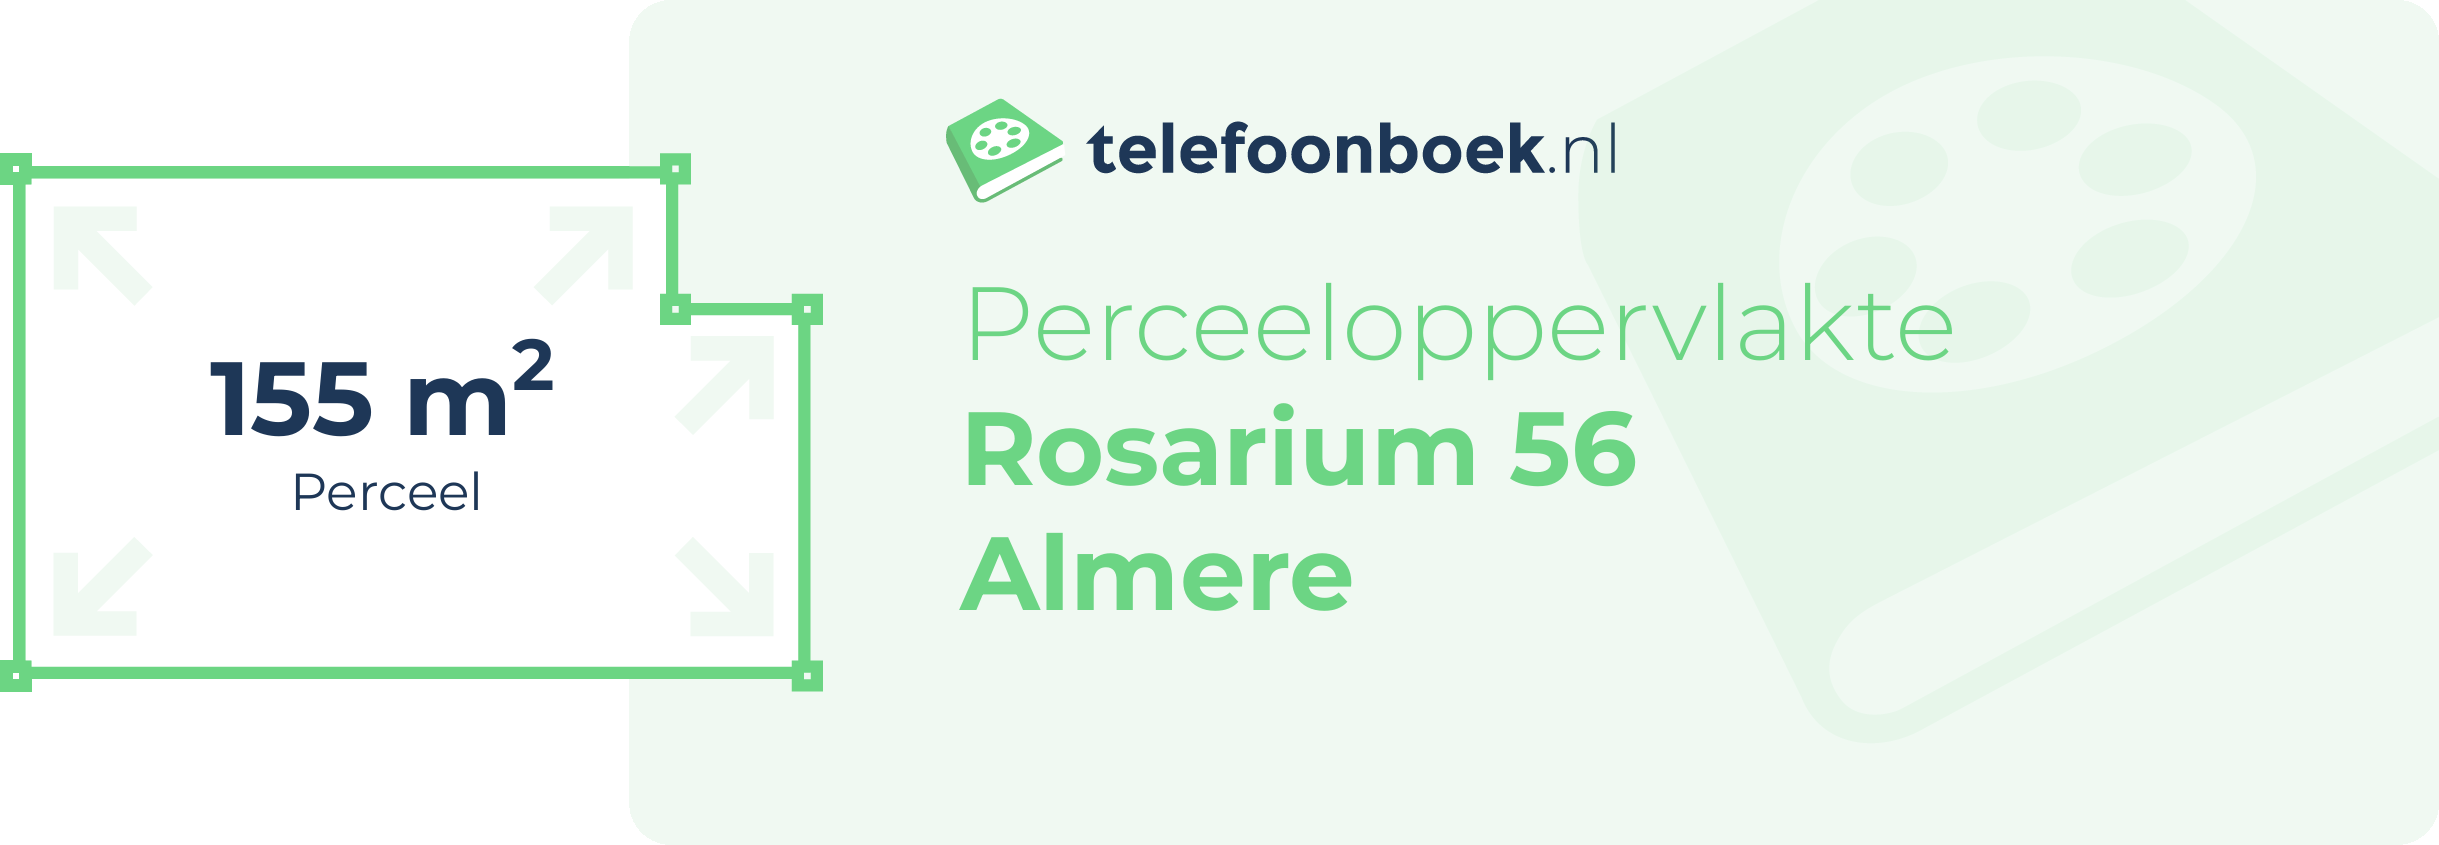 Perceeloppervlakte Rosarium 56 Almere